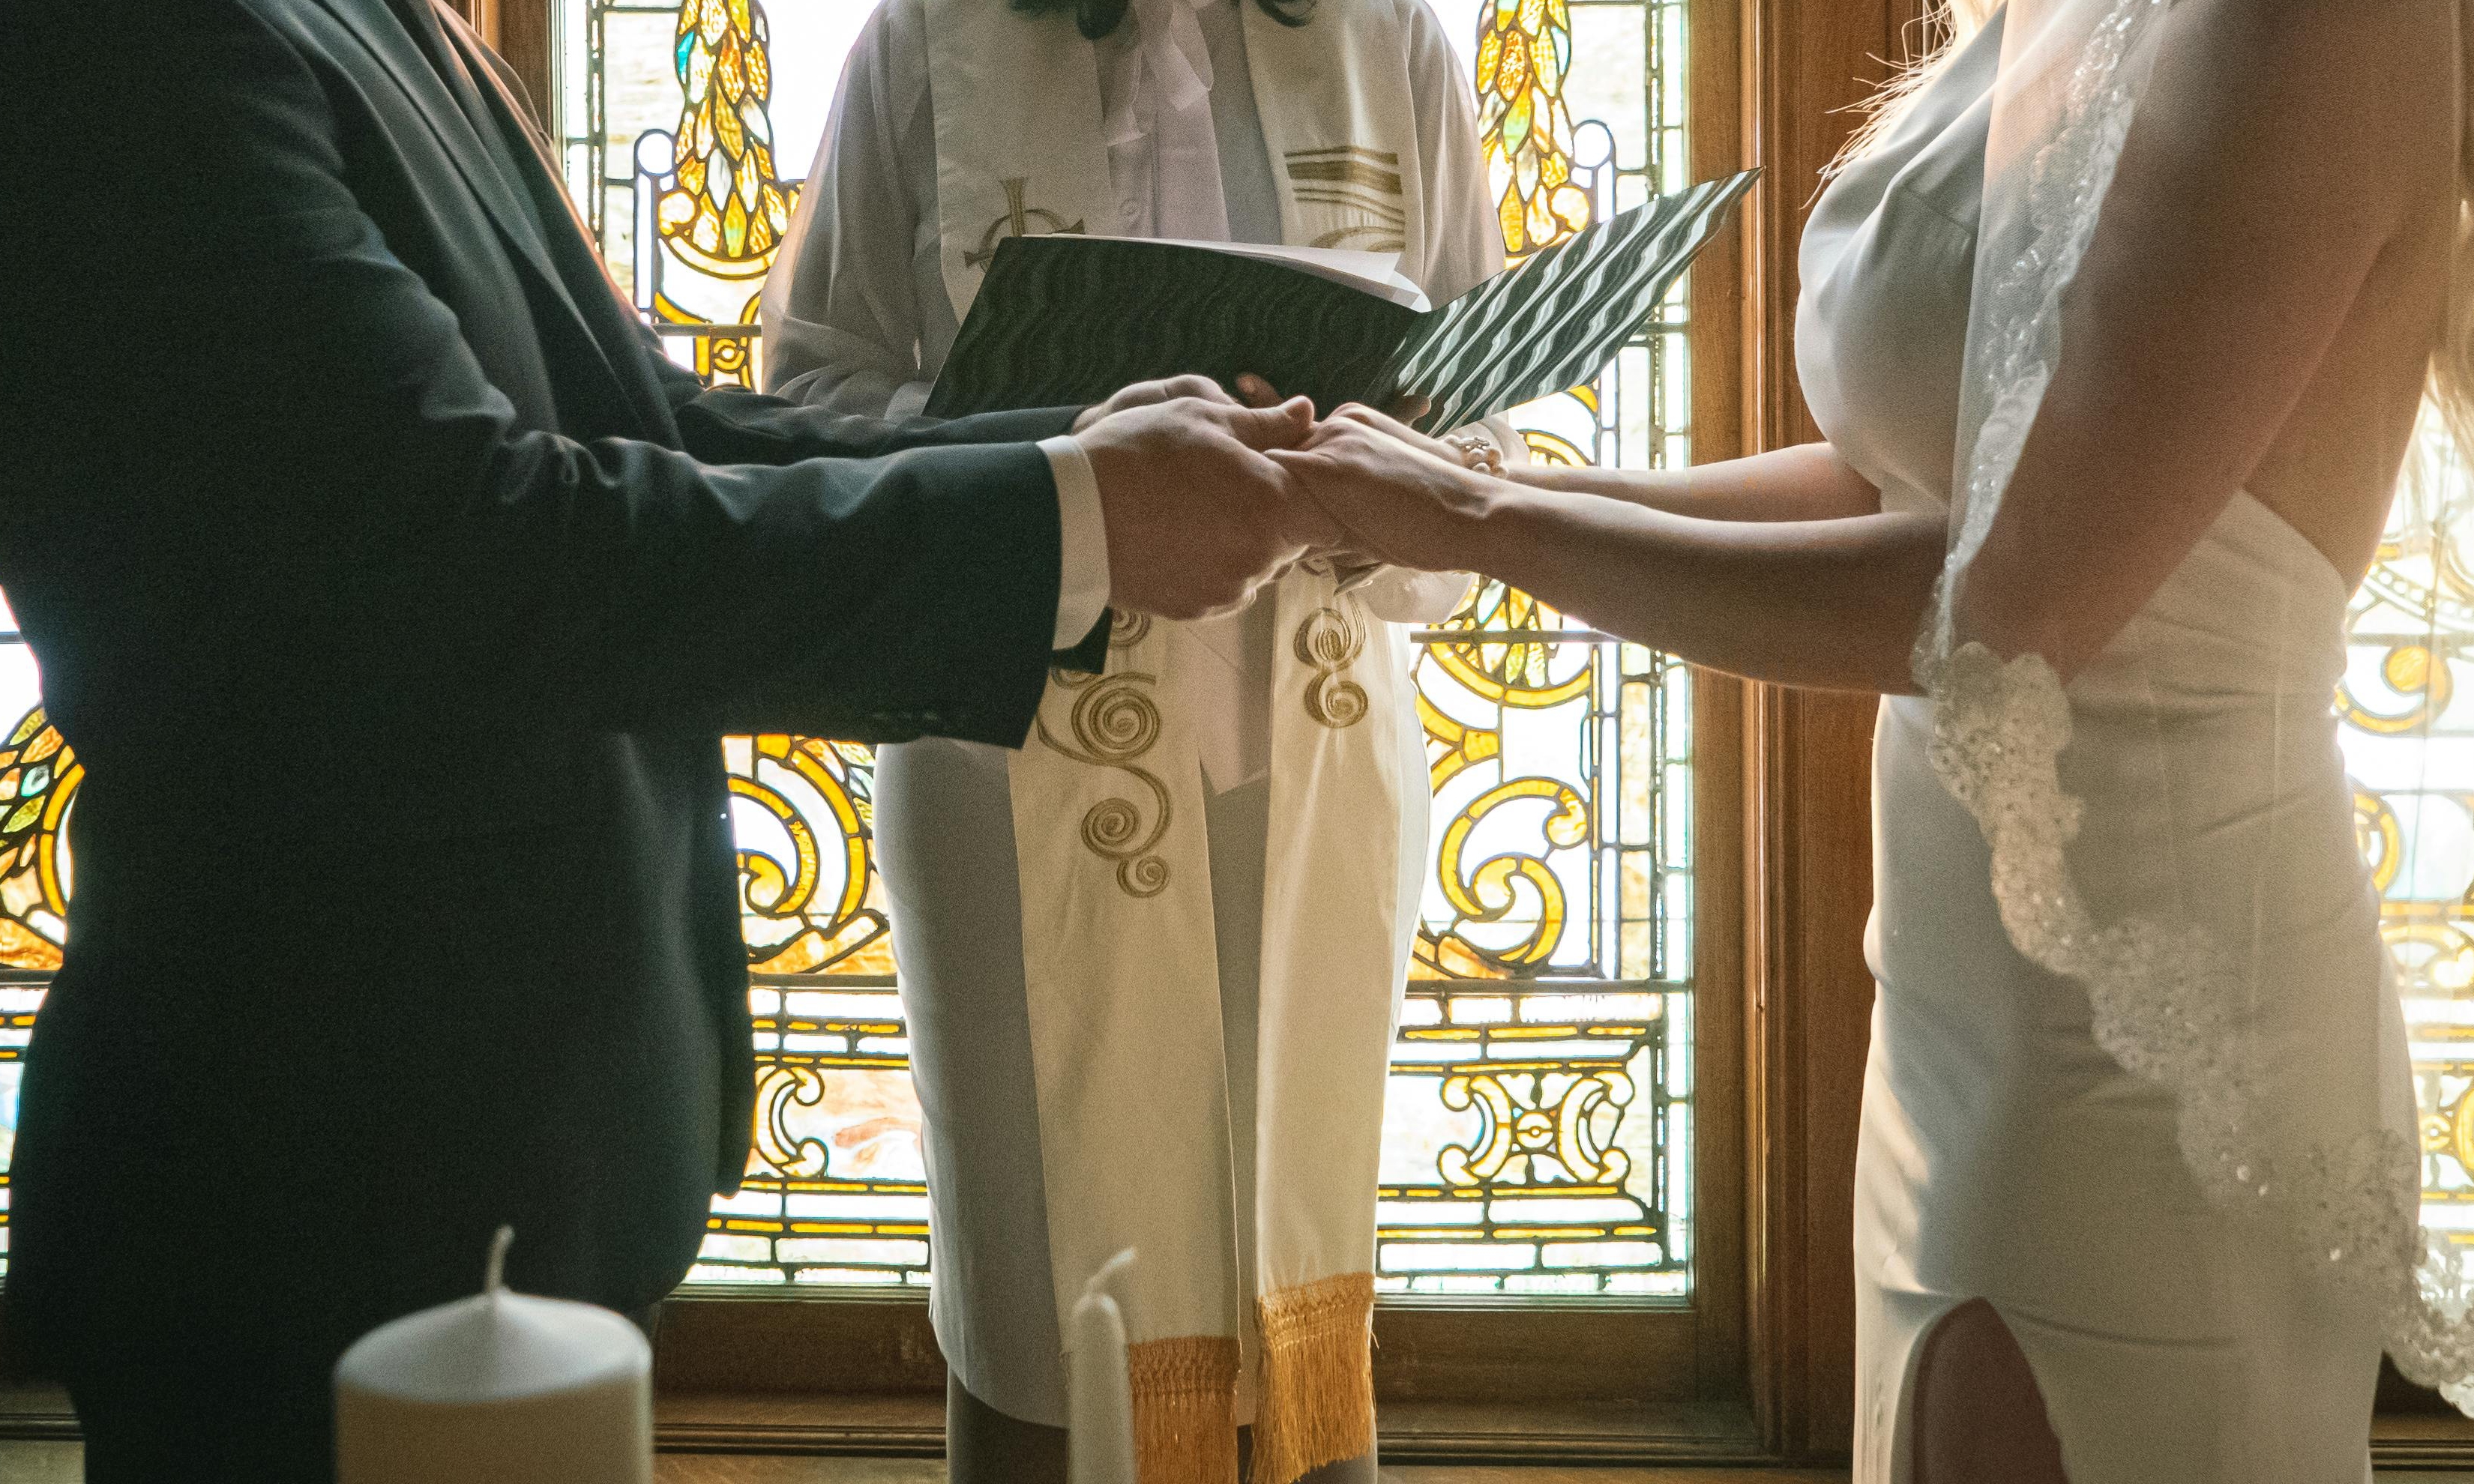 Kaia y su futuro marido se dan la mano en el altar | Fuente: Pexels